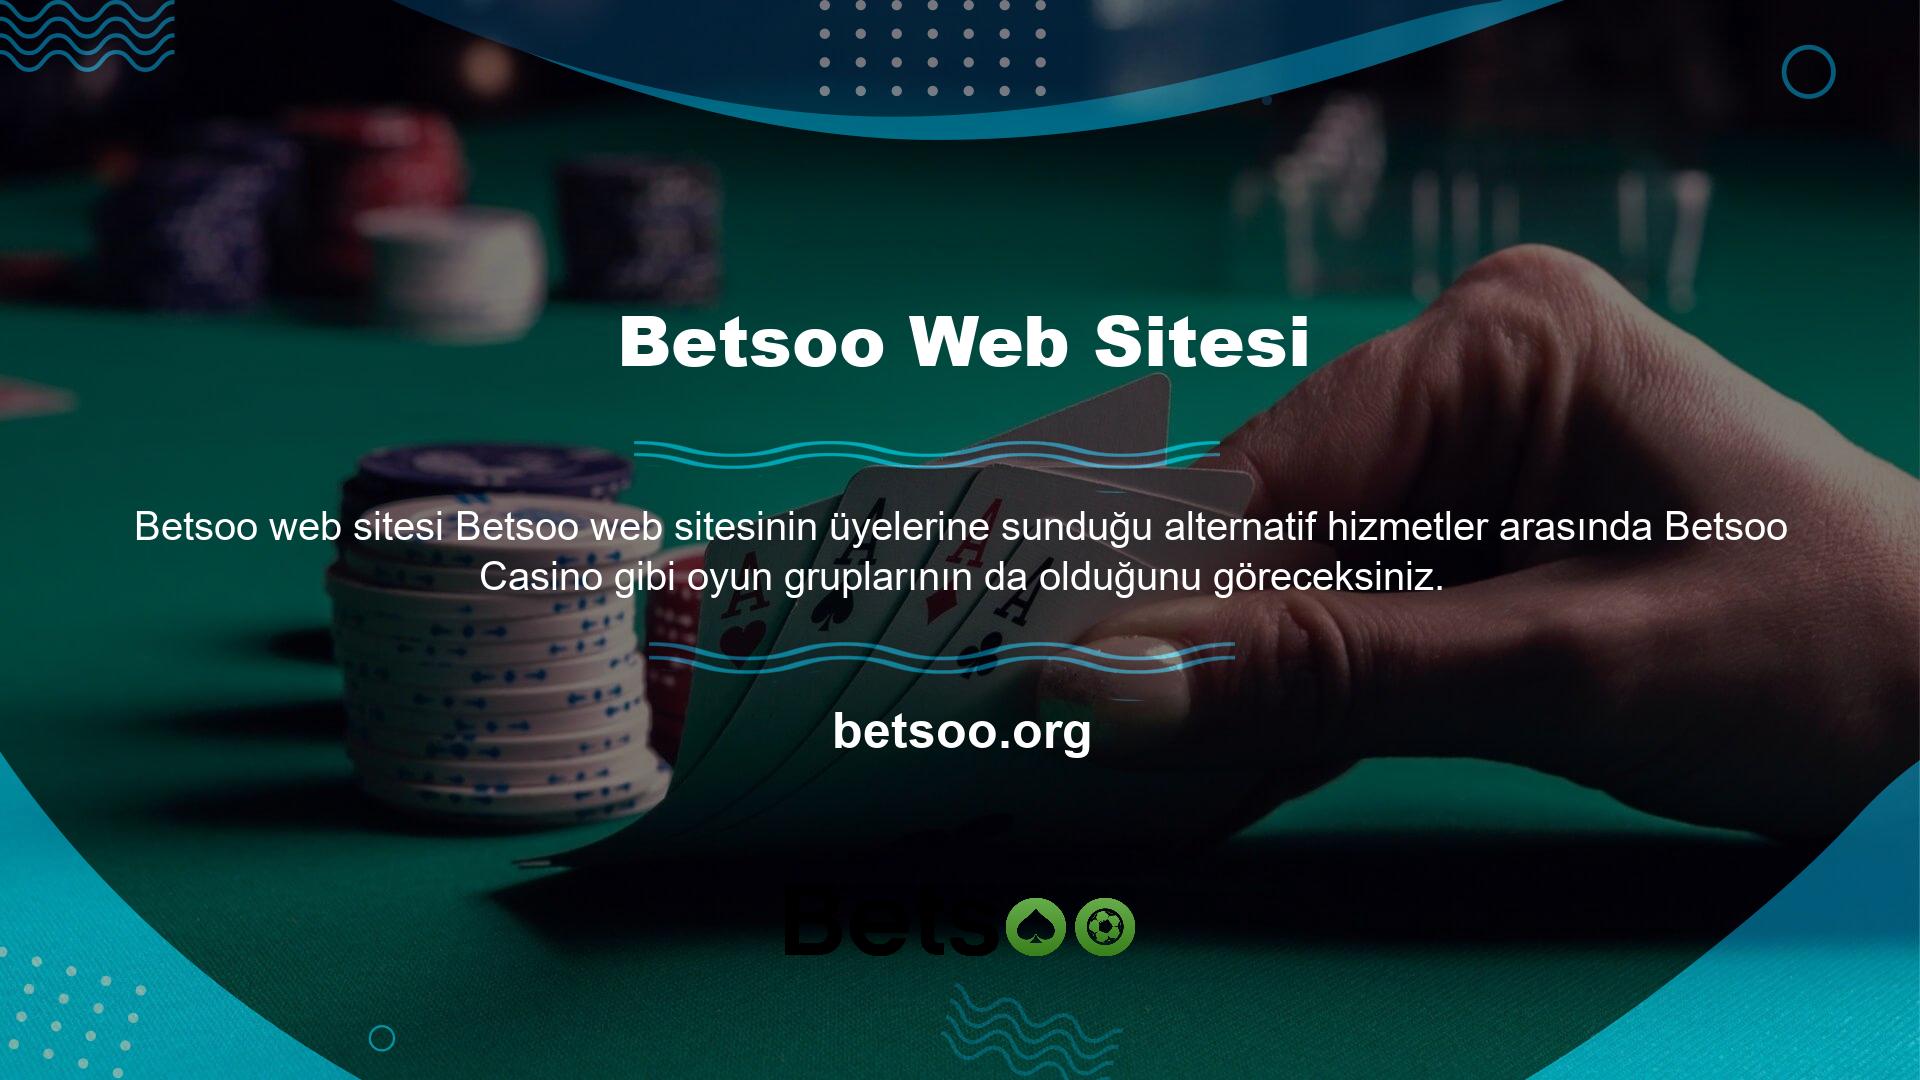 Bu web sitesinin casino oyunlarıyla ilgili ilginç özelliklerinden biri